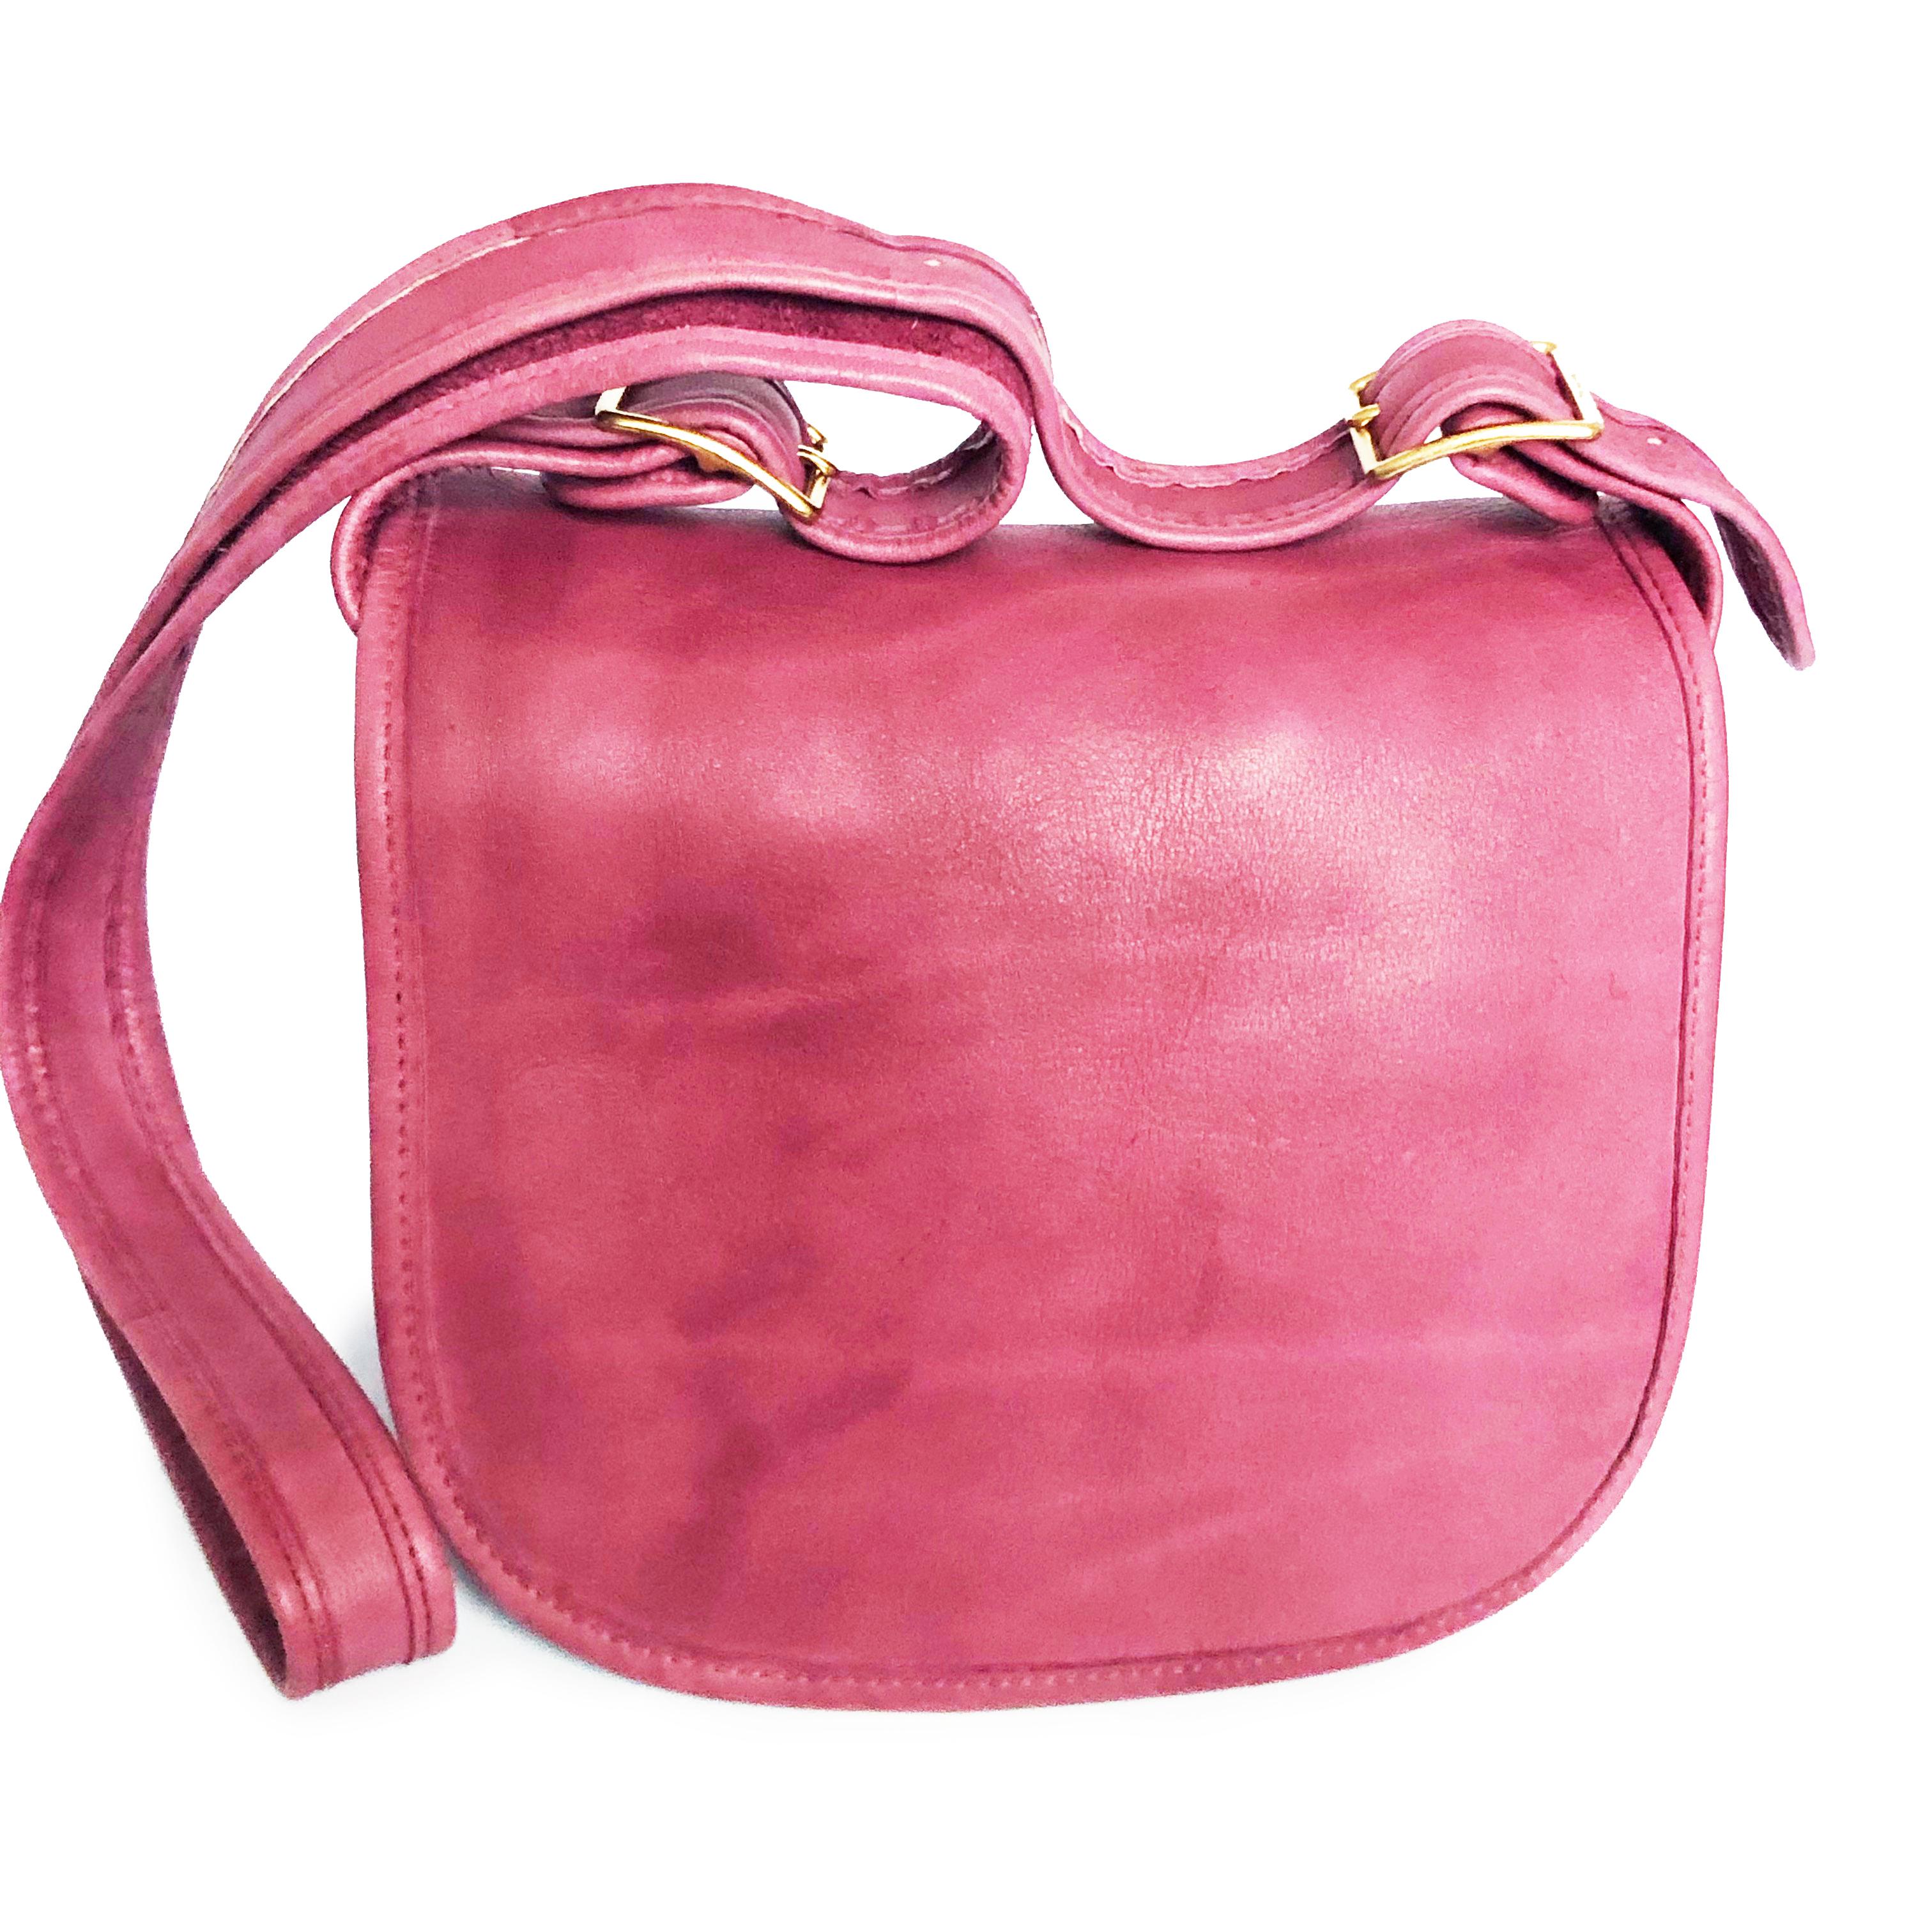 pink coach bag